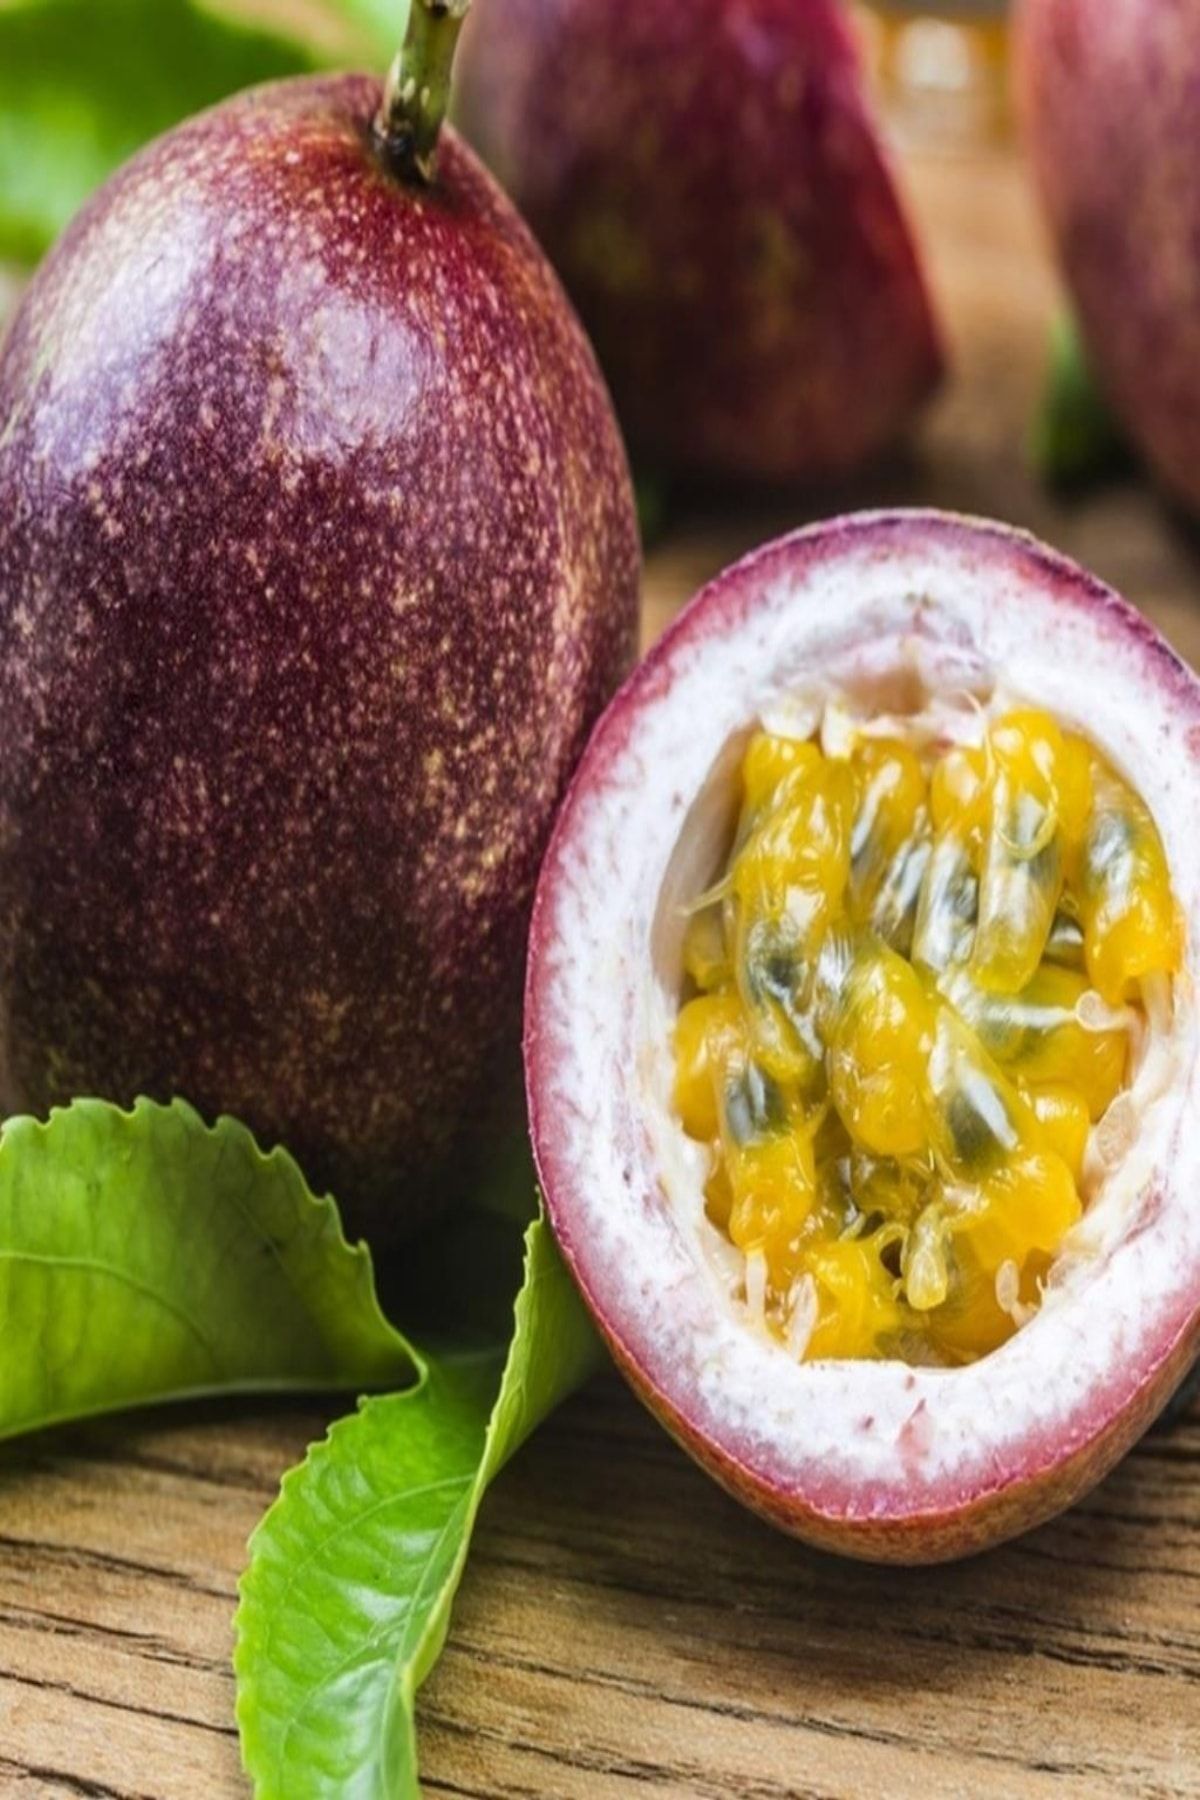 Bilgarden Tüplü Passion Fruit -tutku-aşk Meyvesi Fidanı